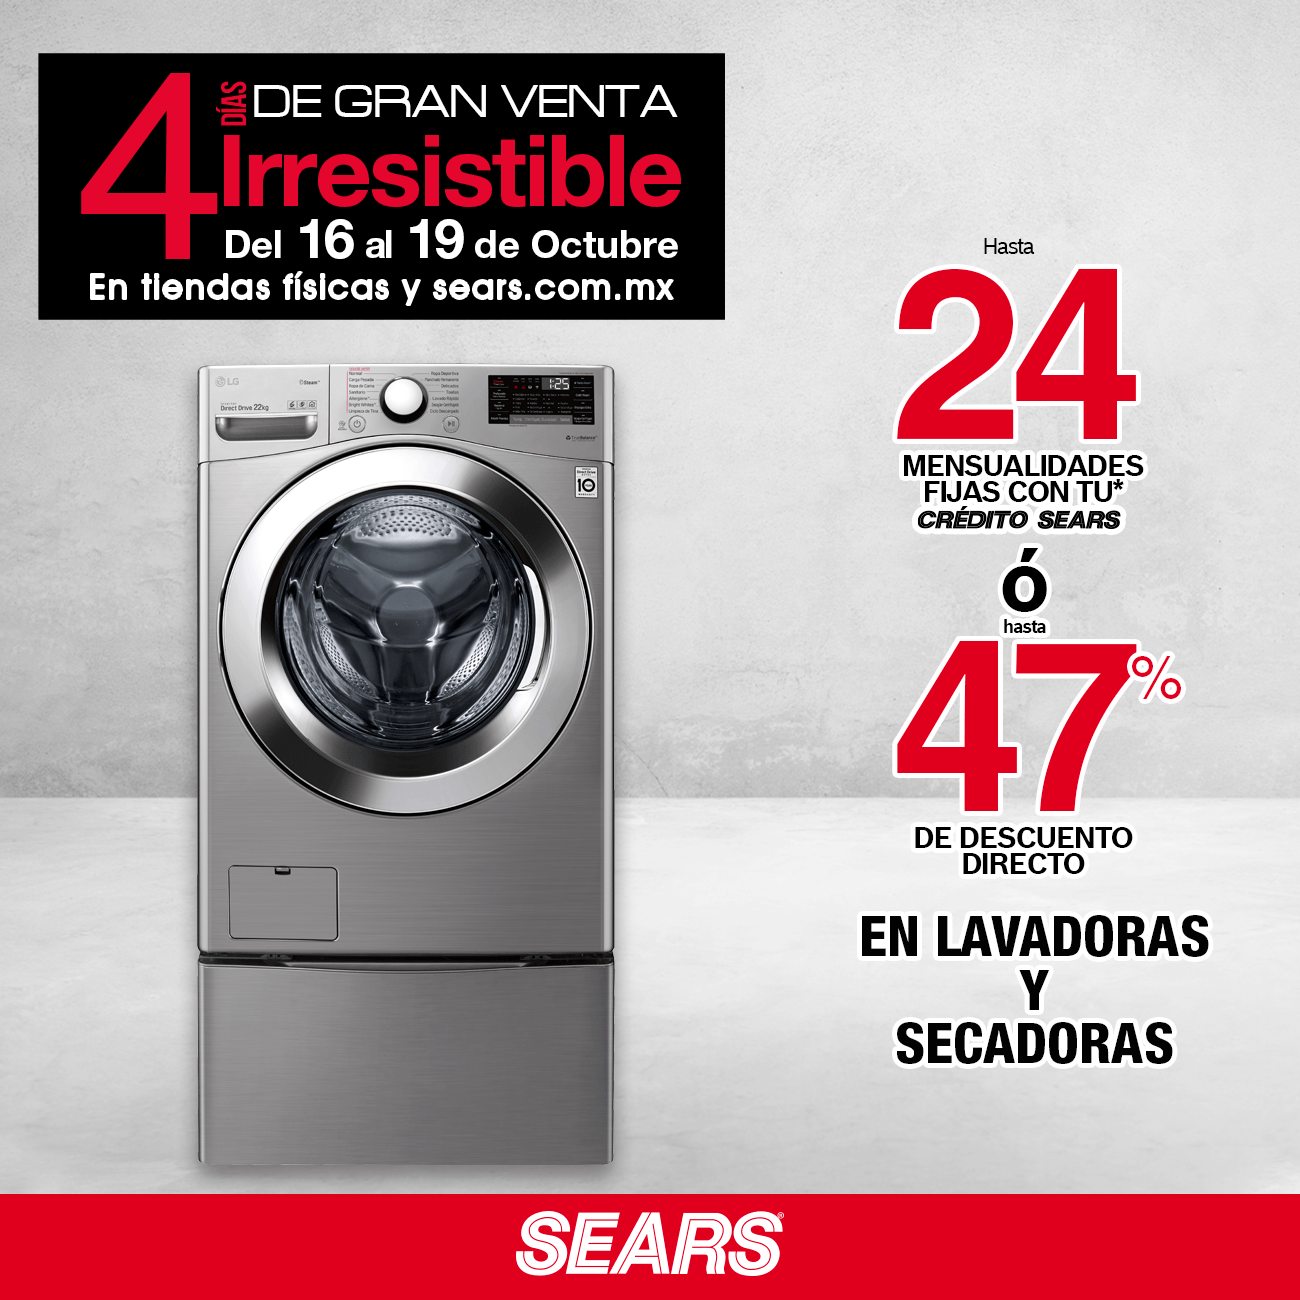 Sears México on Twitter: "No dejes pasar esta súper promoción que tenemos en lavadoras y secadoras. ¡Visítanos! 👉✨https://t.co/LeGG5aOjMg las bases de esta promoción aquí: https://t.co/tV5FYjfjJE https://t.co/k6a41lFTeX" / Twitter